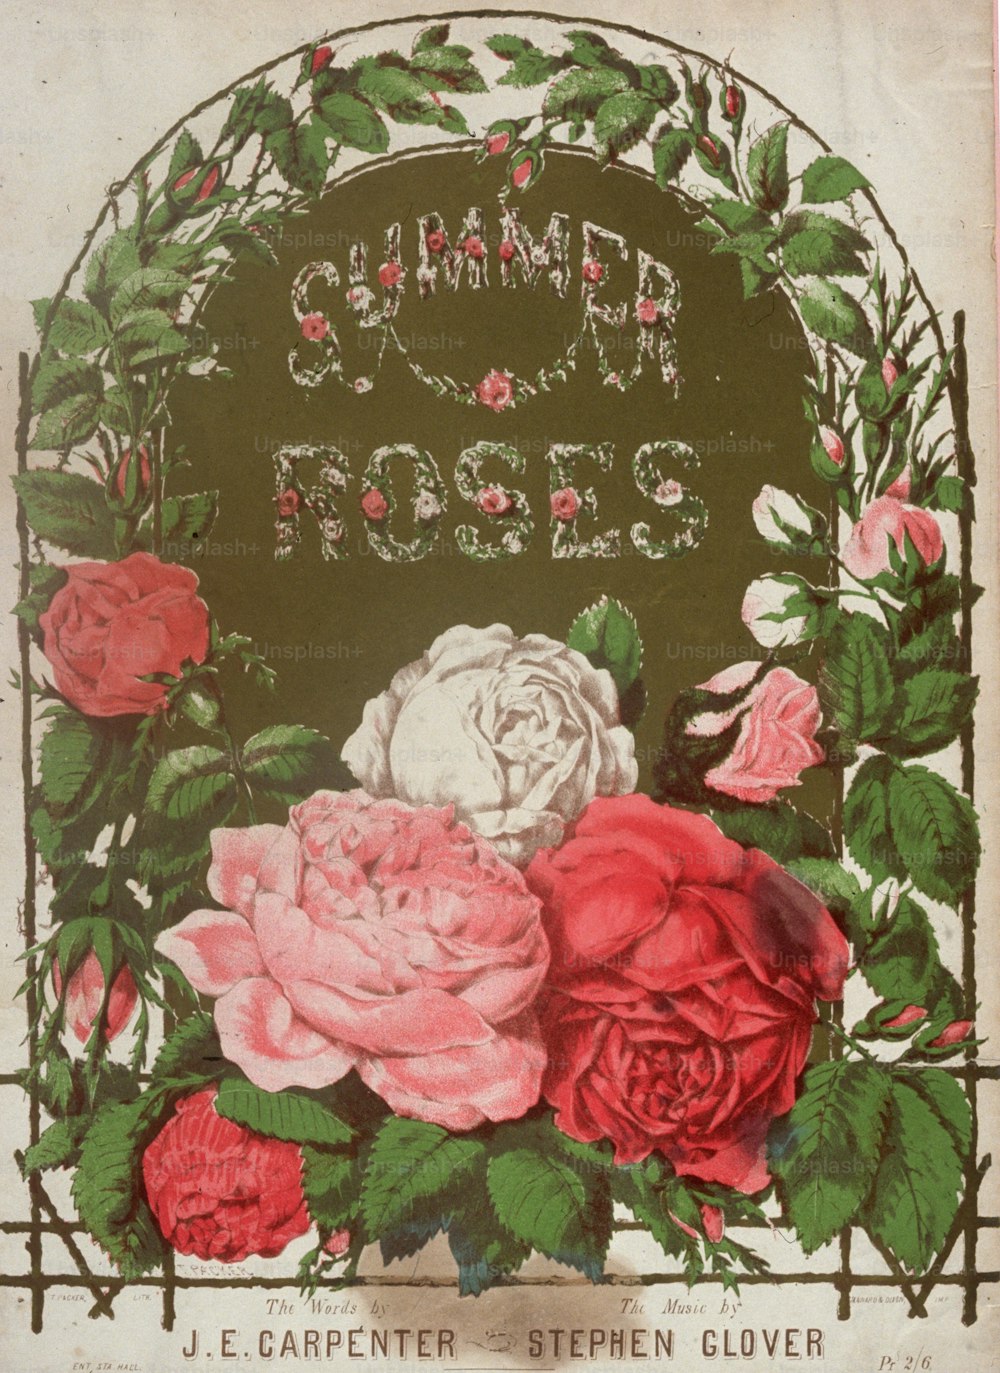 1890年頃:スティーヴン・グローヴァー作詞、J・E・カーペンター作詞の「サマー・ローズ」の楽譜の表紙。 (写真提供:Hulton Archive/Getty Images)